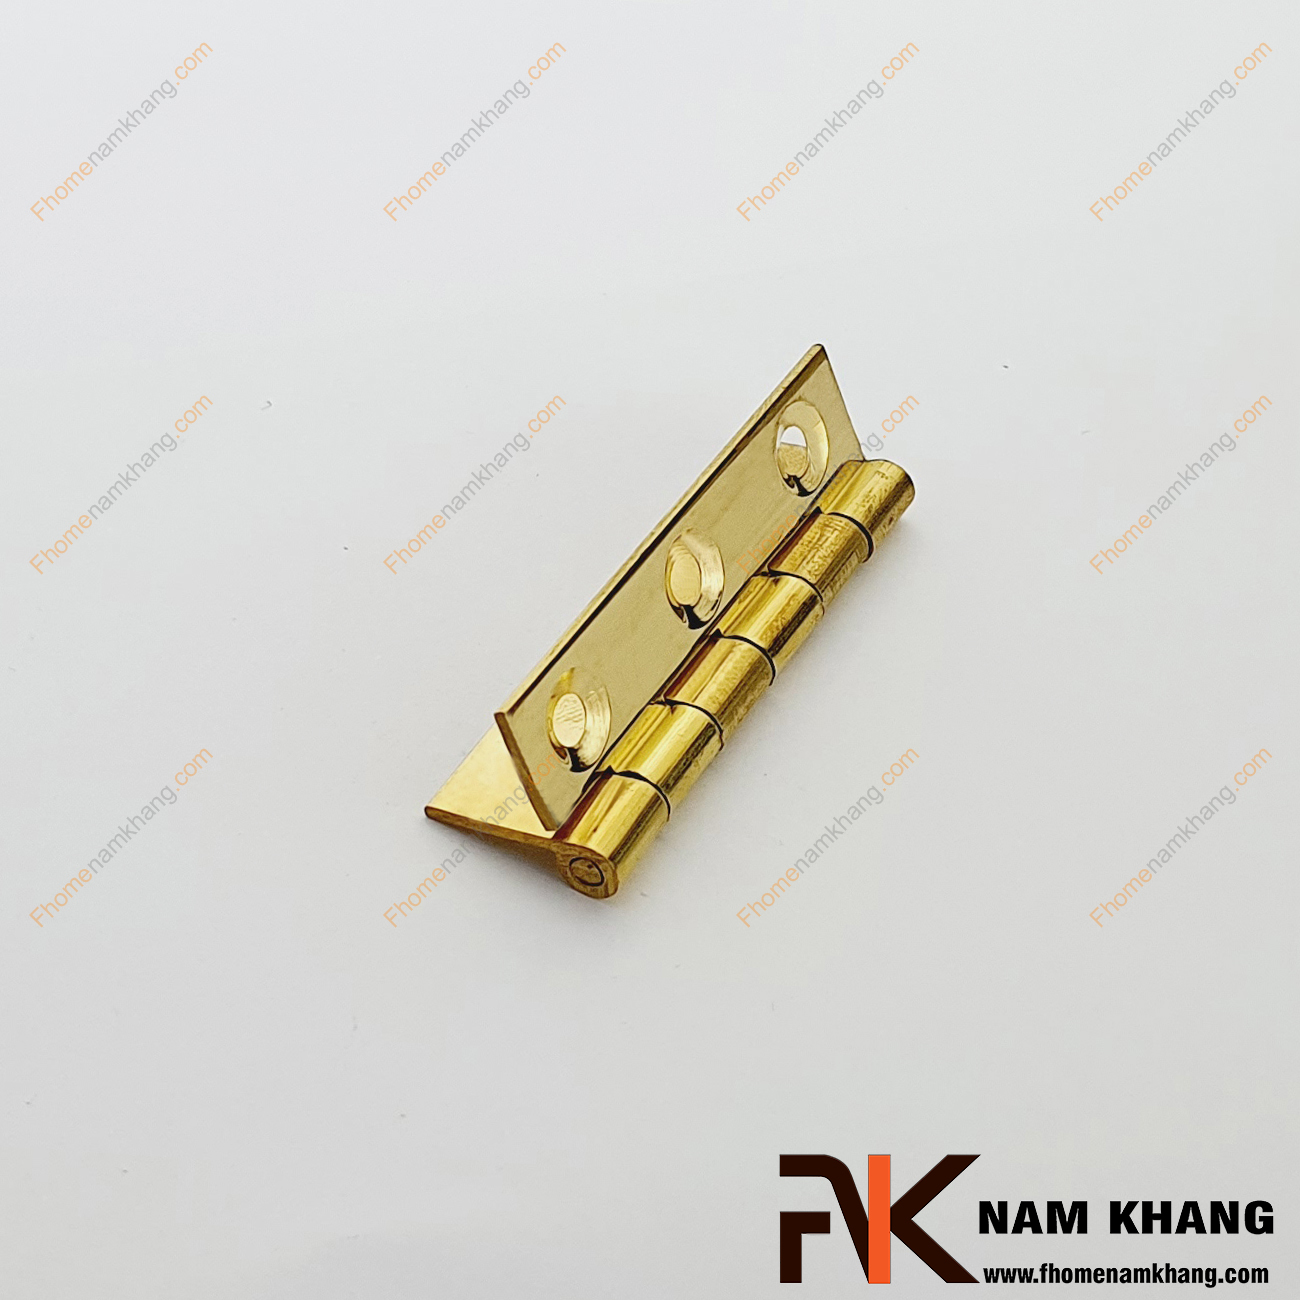 Bản lề lá tủ màu đồng vàng NK470-5FDO được sản xuất đồng cao cấp. Mẫu bản lề này có size nhỏ chuyên dùng cho các dạng tủ kệ nhỏ, cánh cửa tủ, cánh hộp gỗ, cánh thùng gỗ và hộp quà tặng.